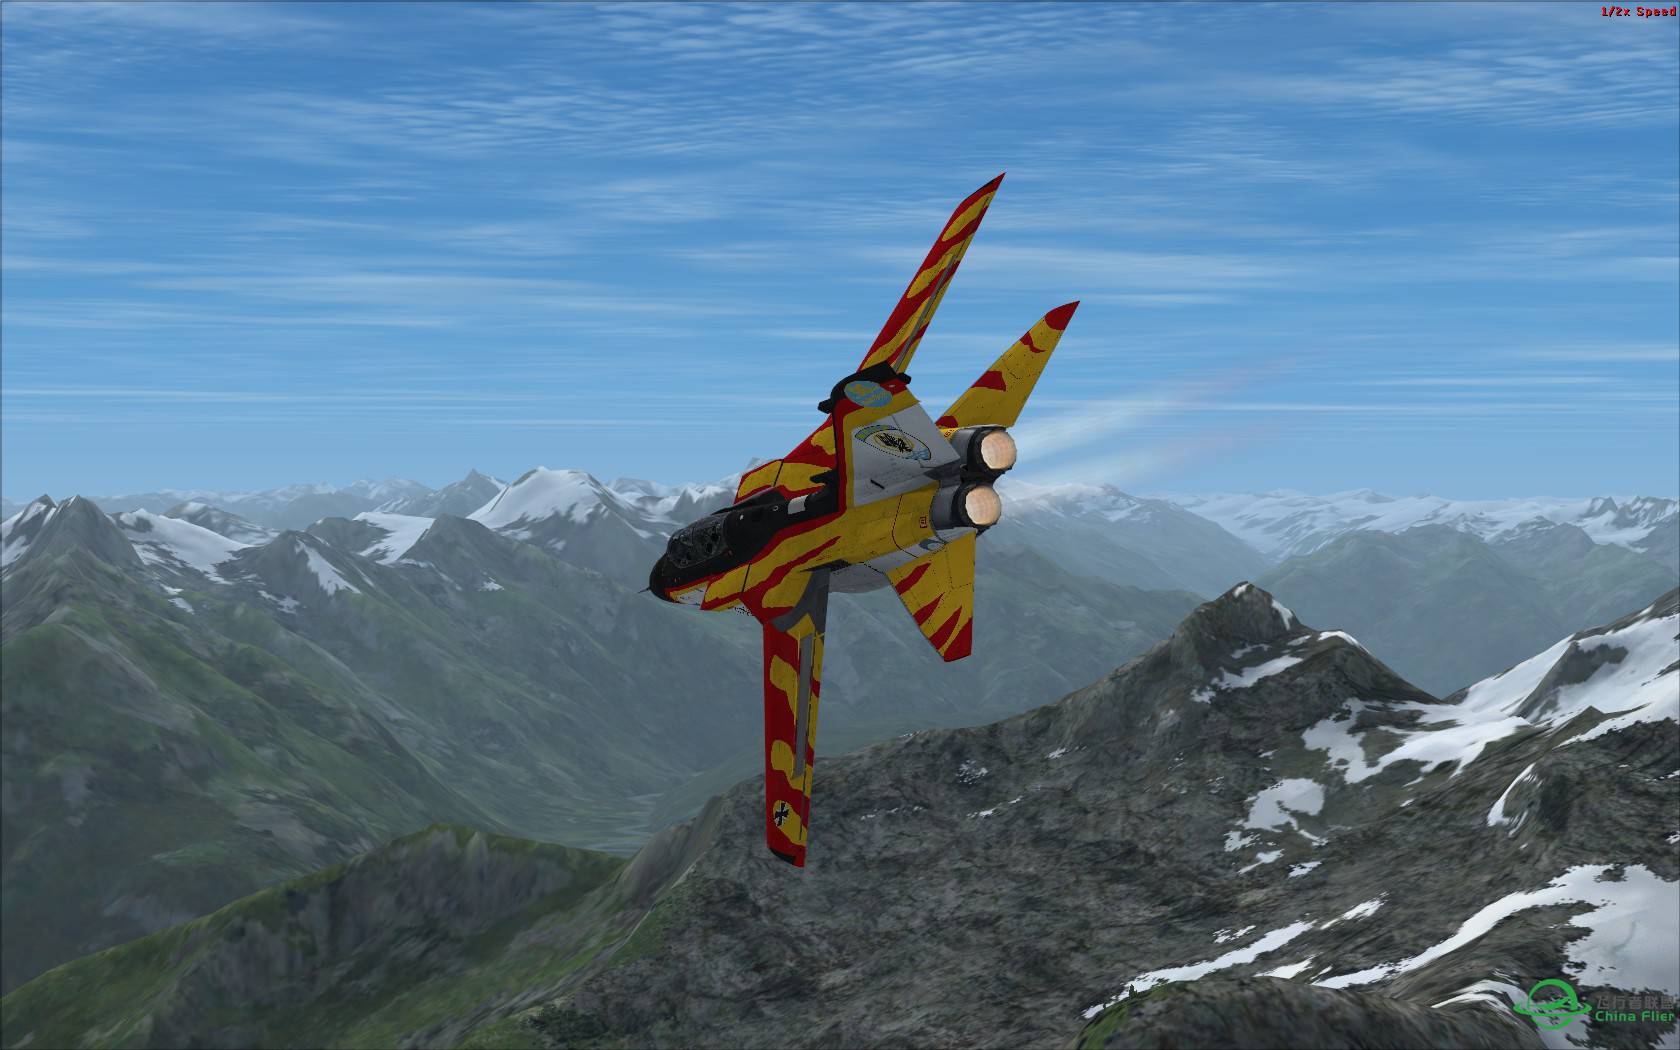 冰与火之歌:最新Just Flight狂风战机火红涂装与蓝色北美冰...-3202 